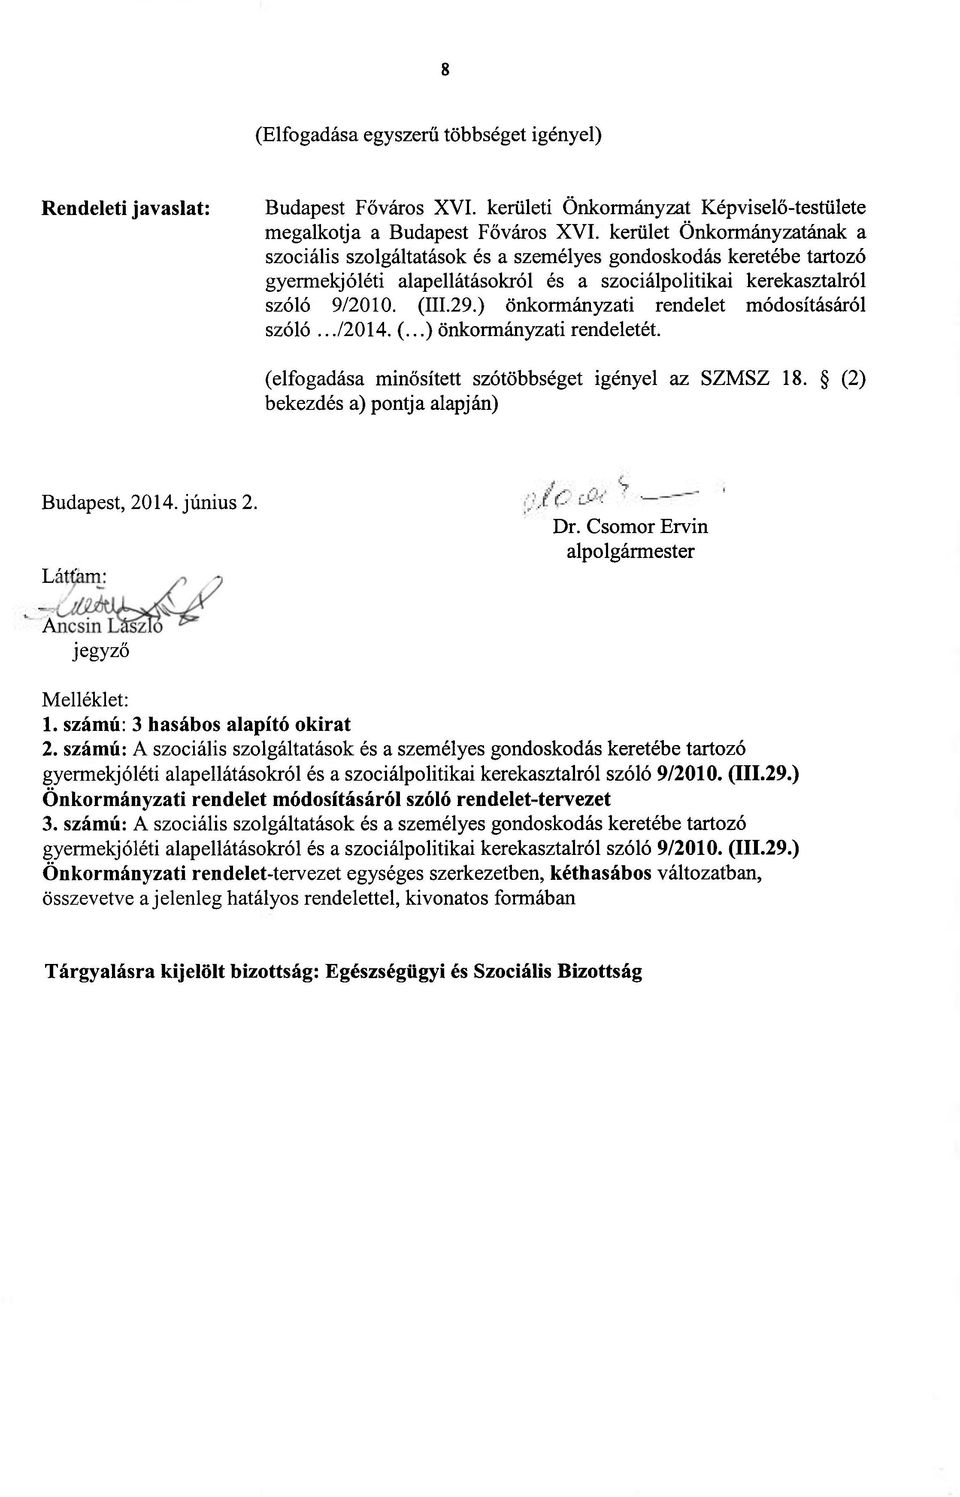 ) önkormányzati rendelet módosításáról szóló.../2014. (...) önkormányzati rendeletét. (elfogadása minősített szótöbbséget igényel az SZMSZ 18. (2) bekezdés a) pontja alapján) Budapest, 2014. június 2.